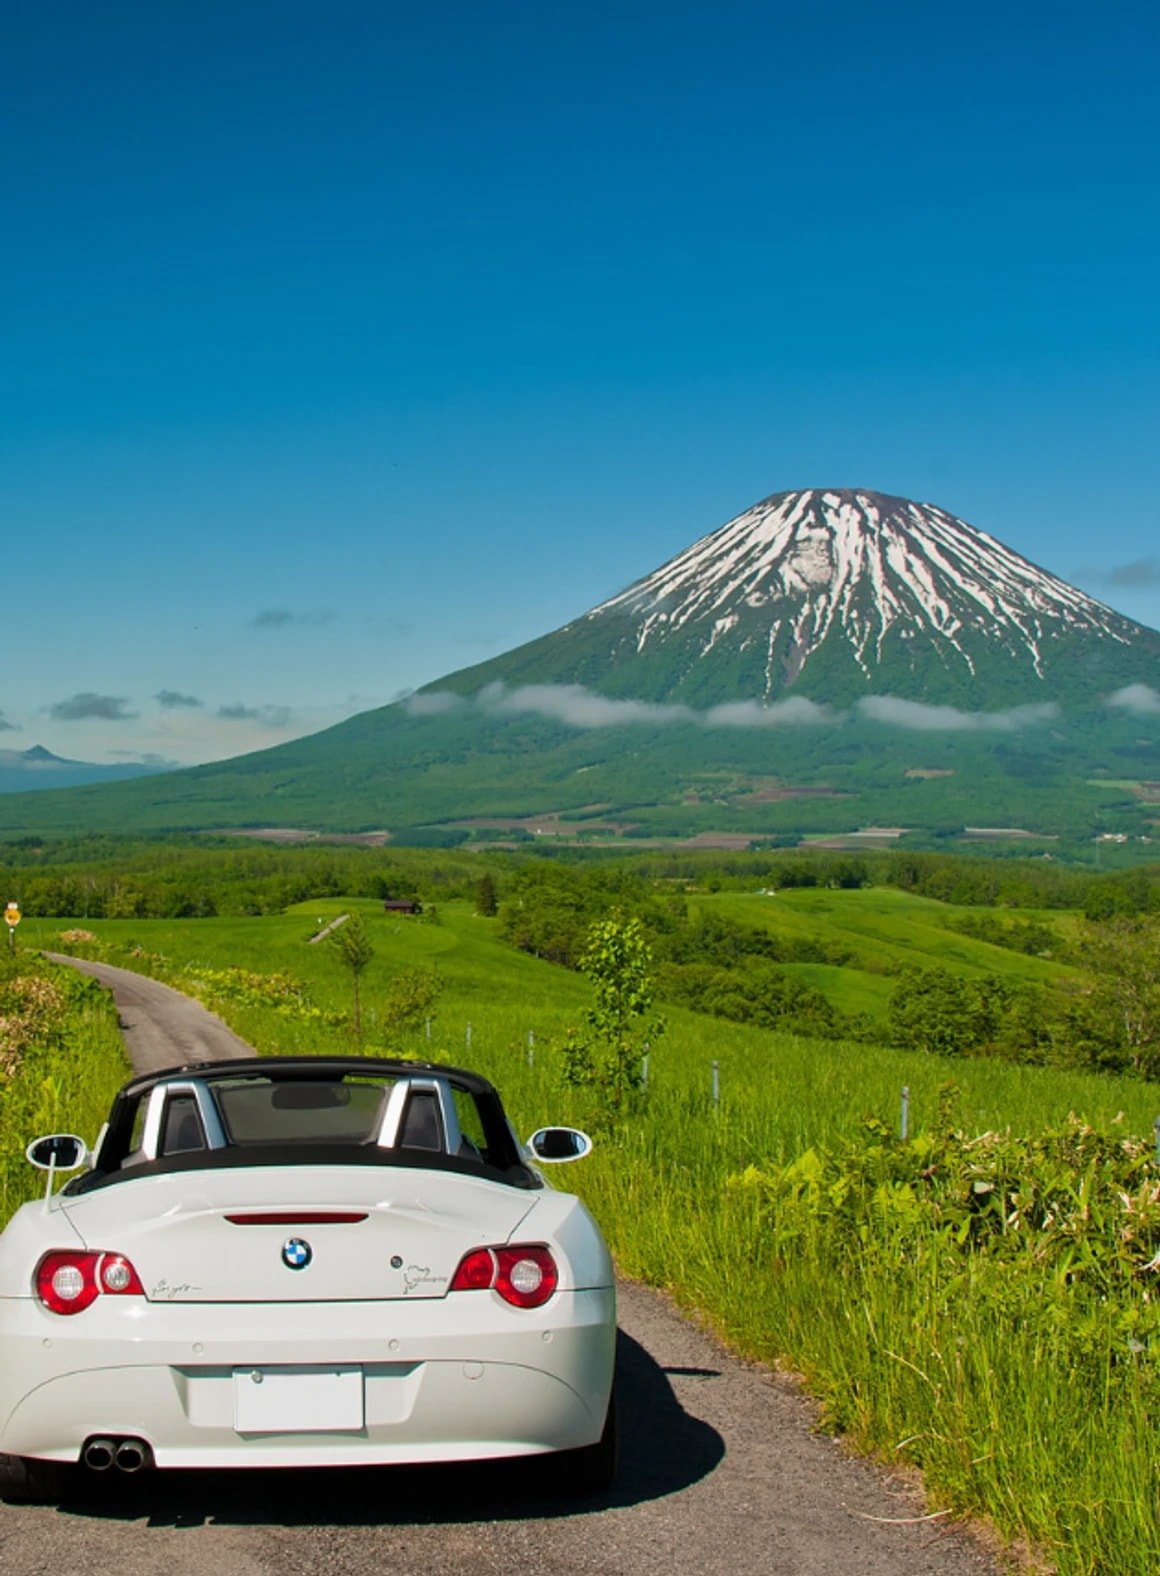 「北海道を代表する名山」羊蹄山を1週しよう